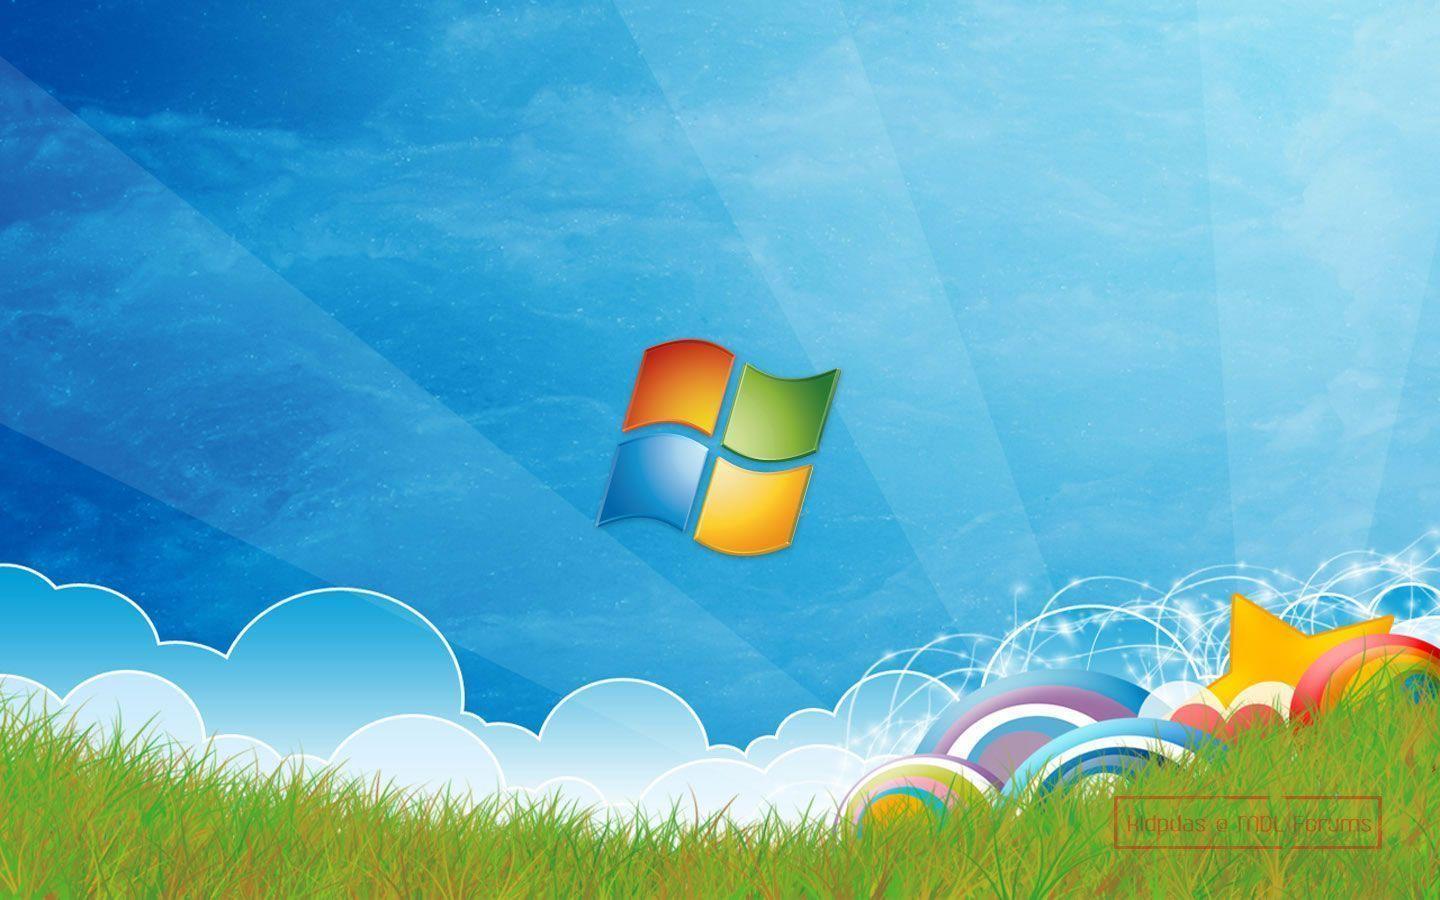 July Windows 8 wallpaper